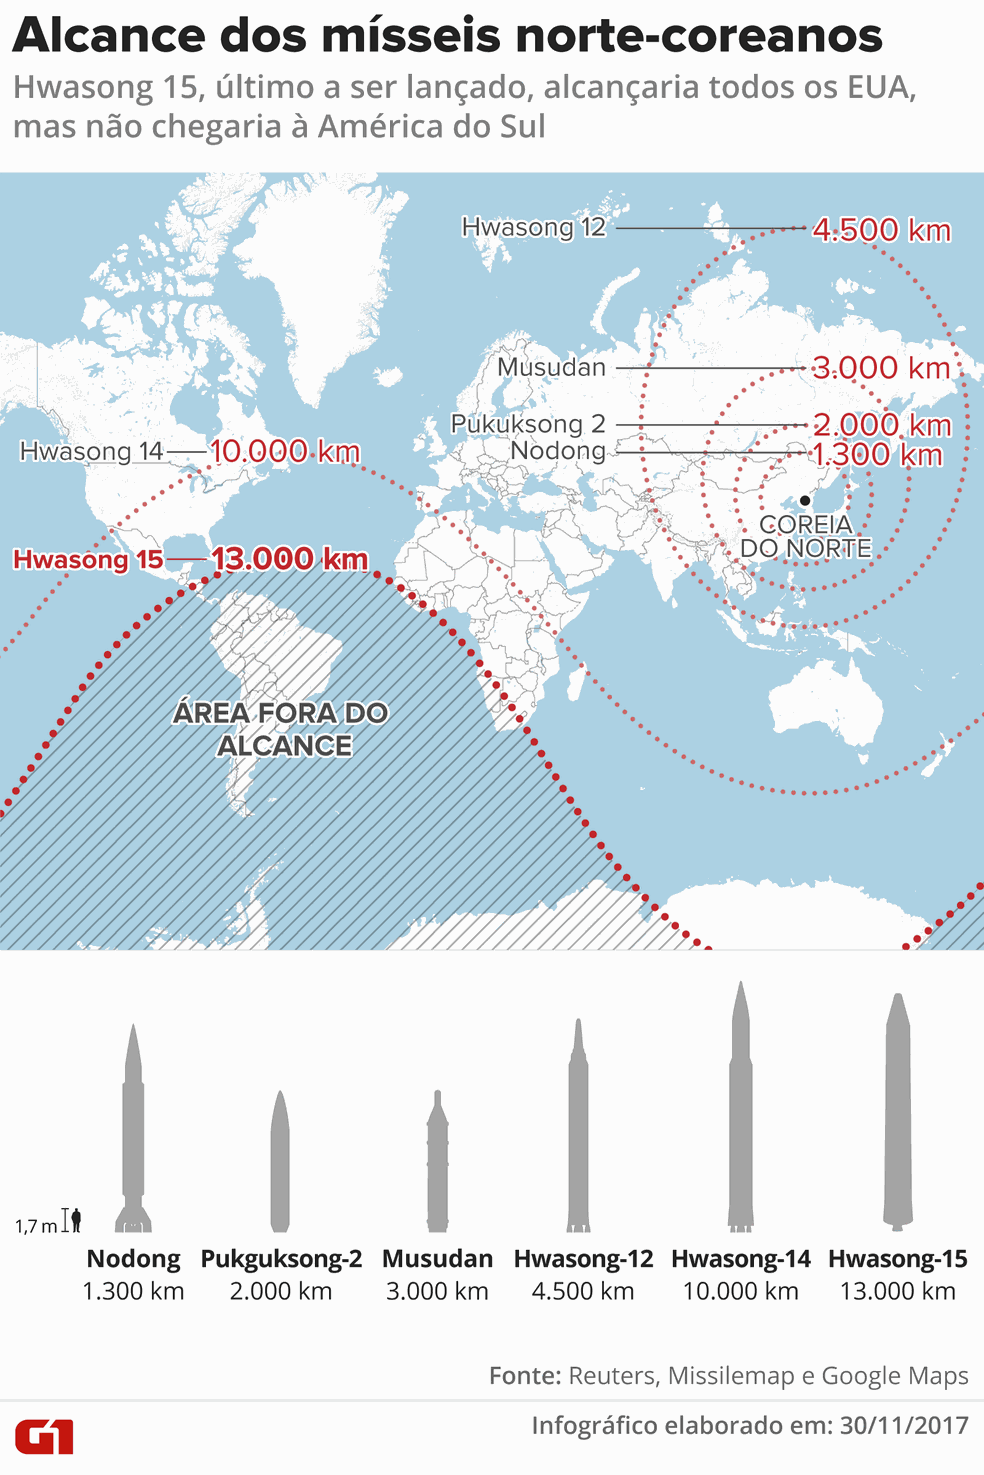 Mapa mostra alcance dos mísseis norte-coreanos (Foto: Arte/G1)